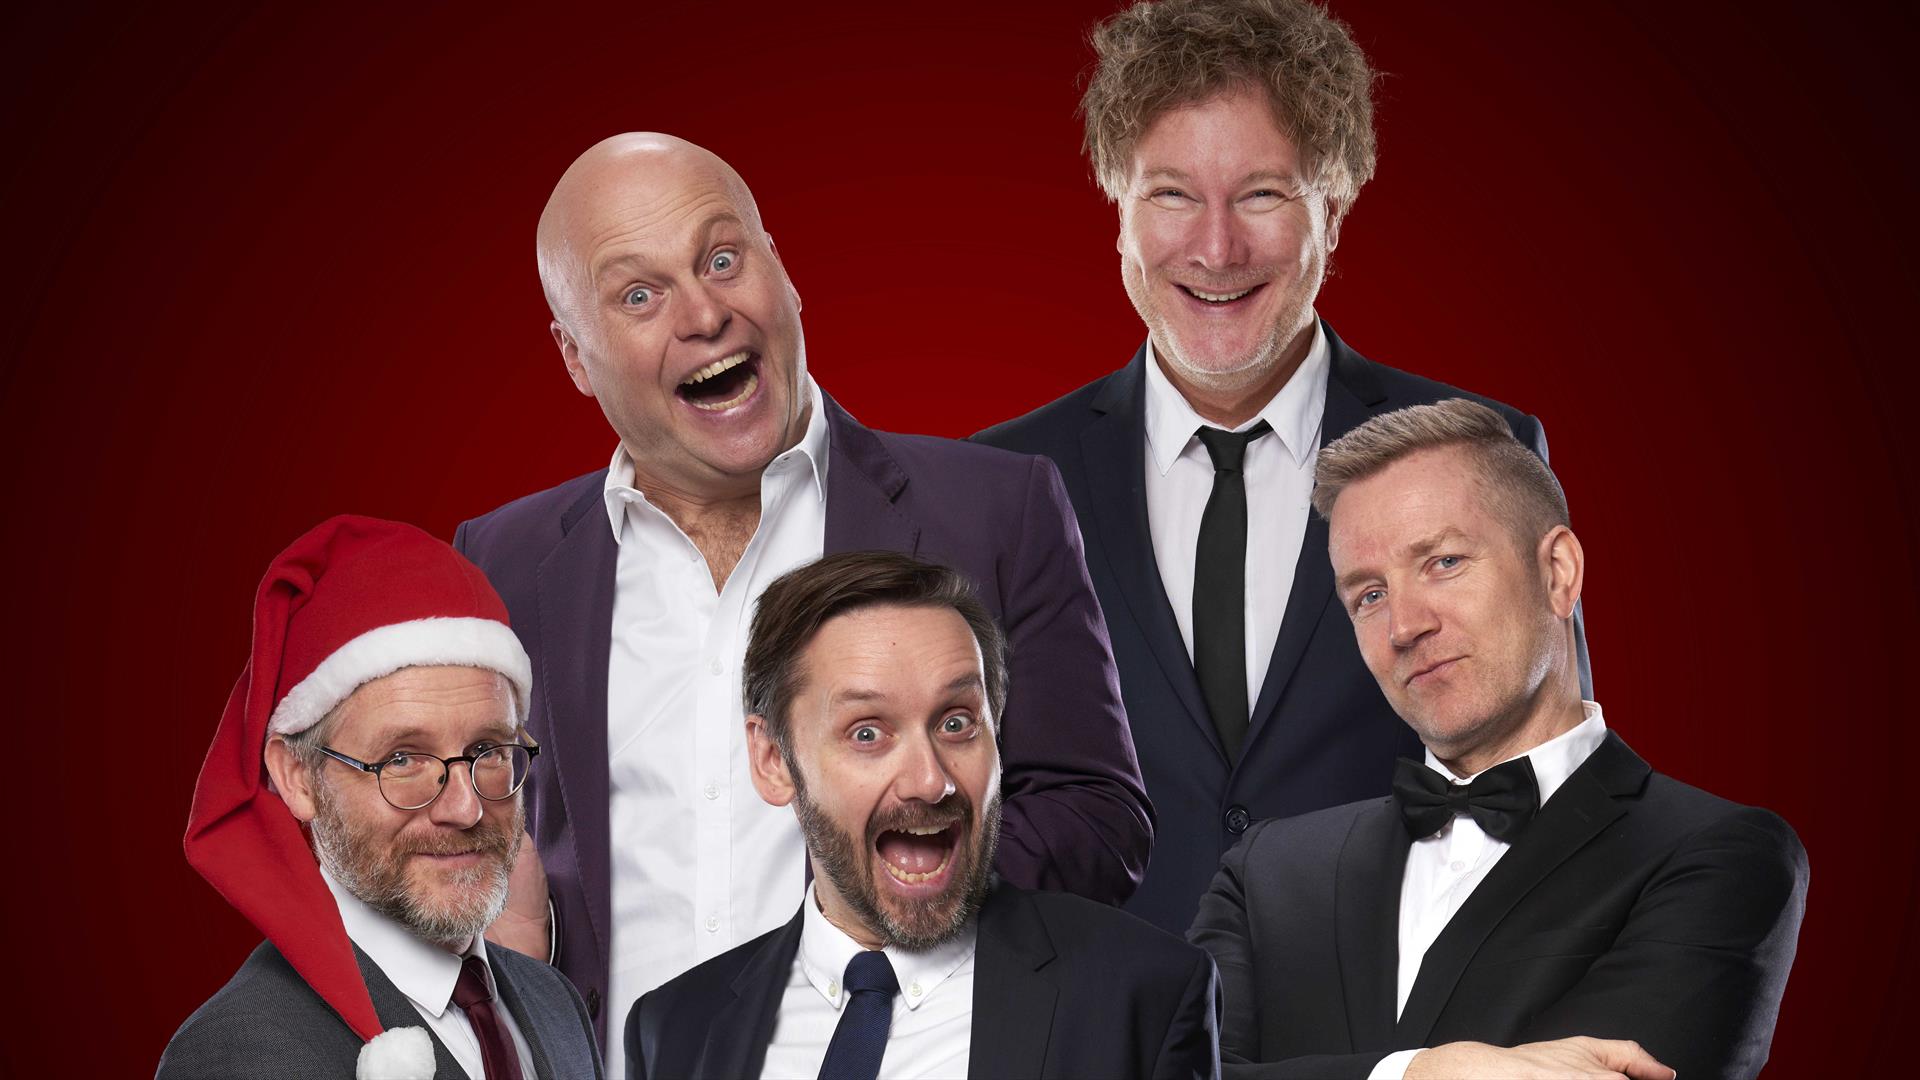 Tøyser jula inn - et juleshow med Gustav Nilsen, Paul Håvard Østby, Jonas Rønning, Jan Martin Johnsen og Torbjørn Dyrud.